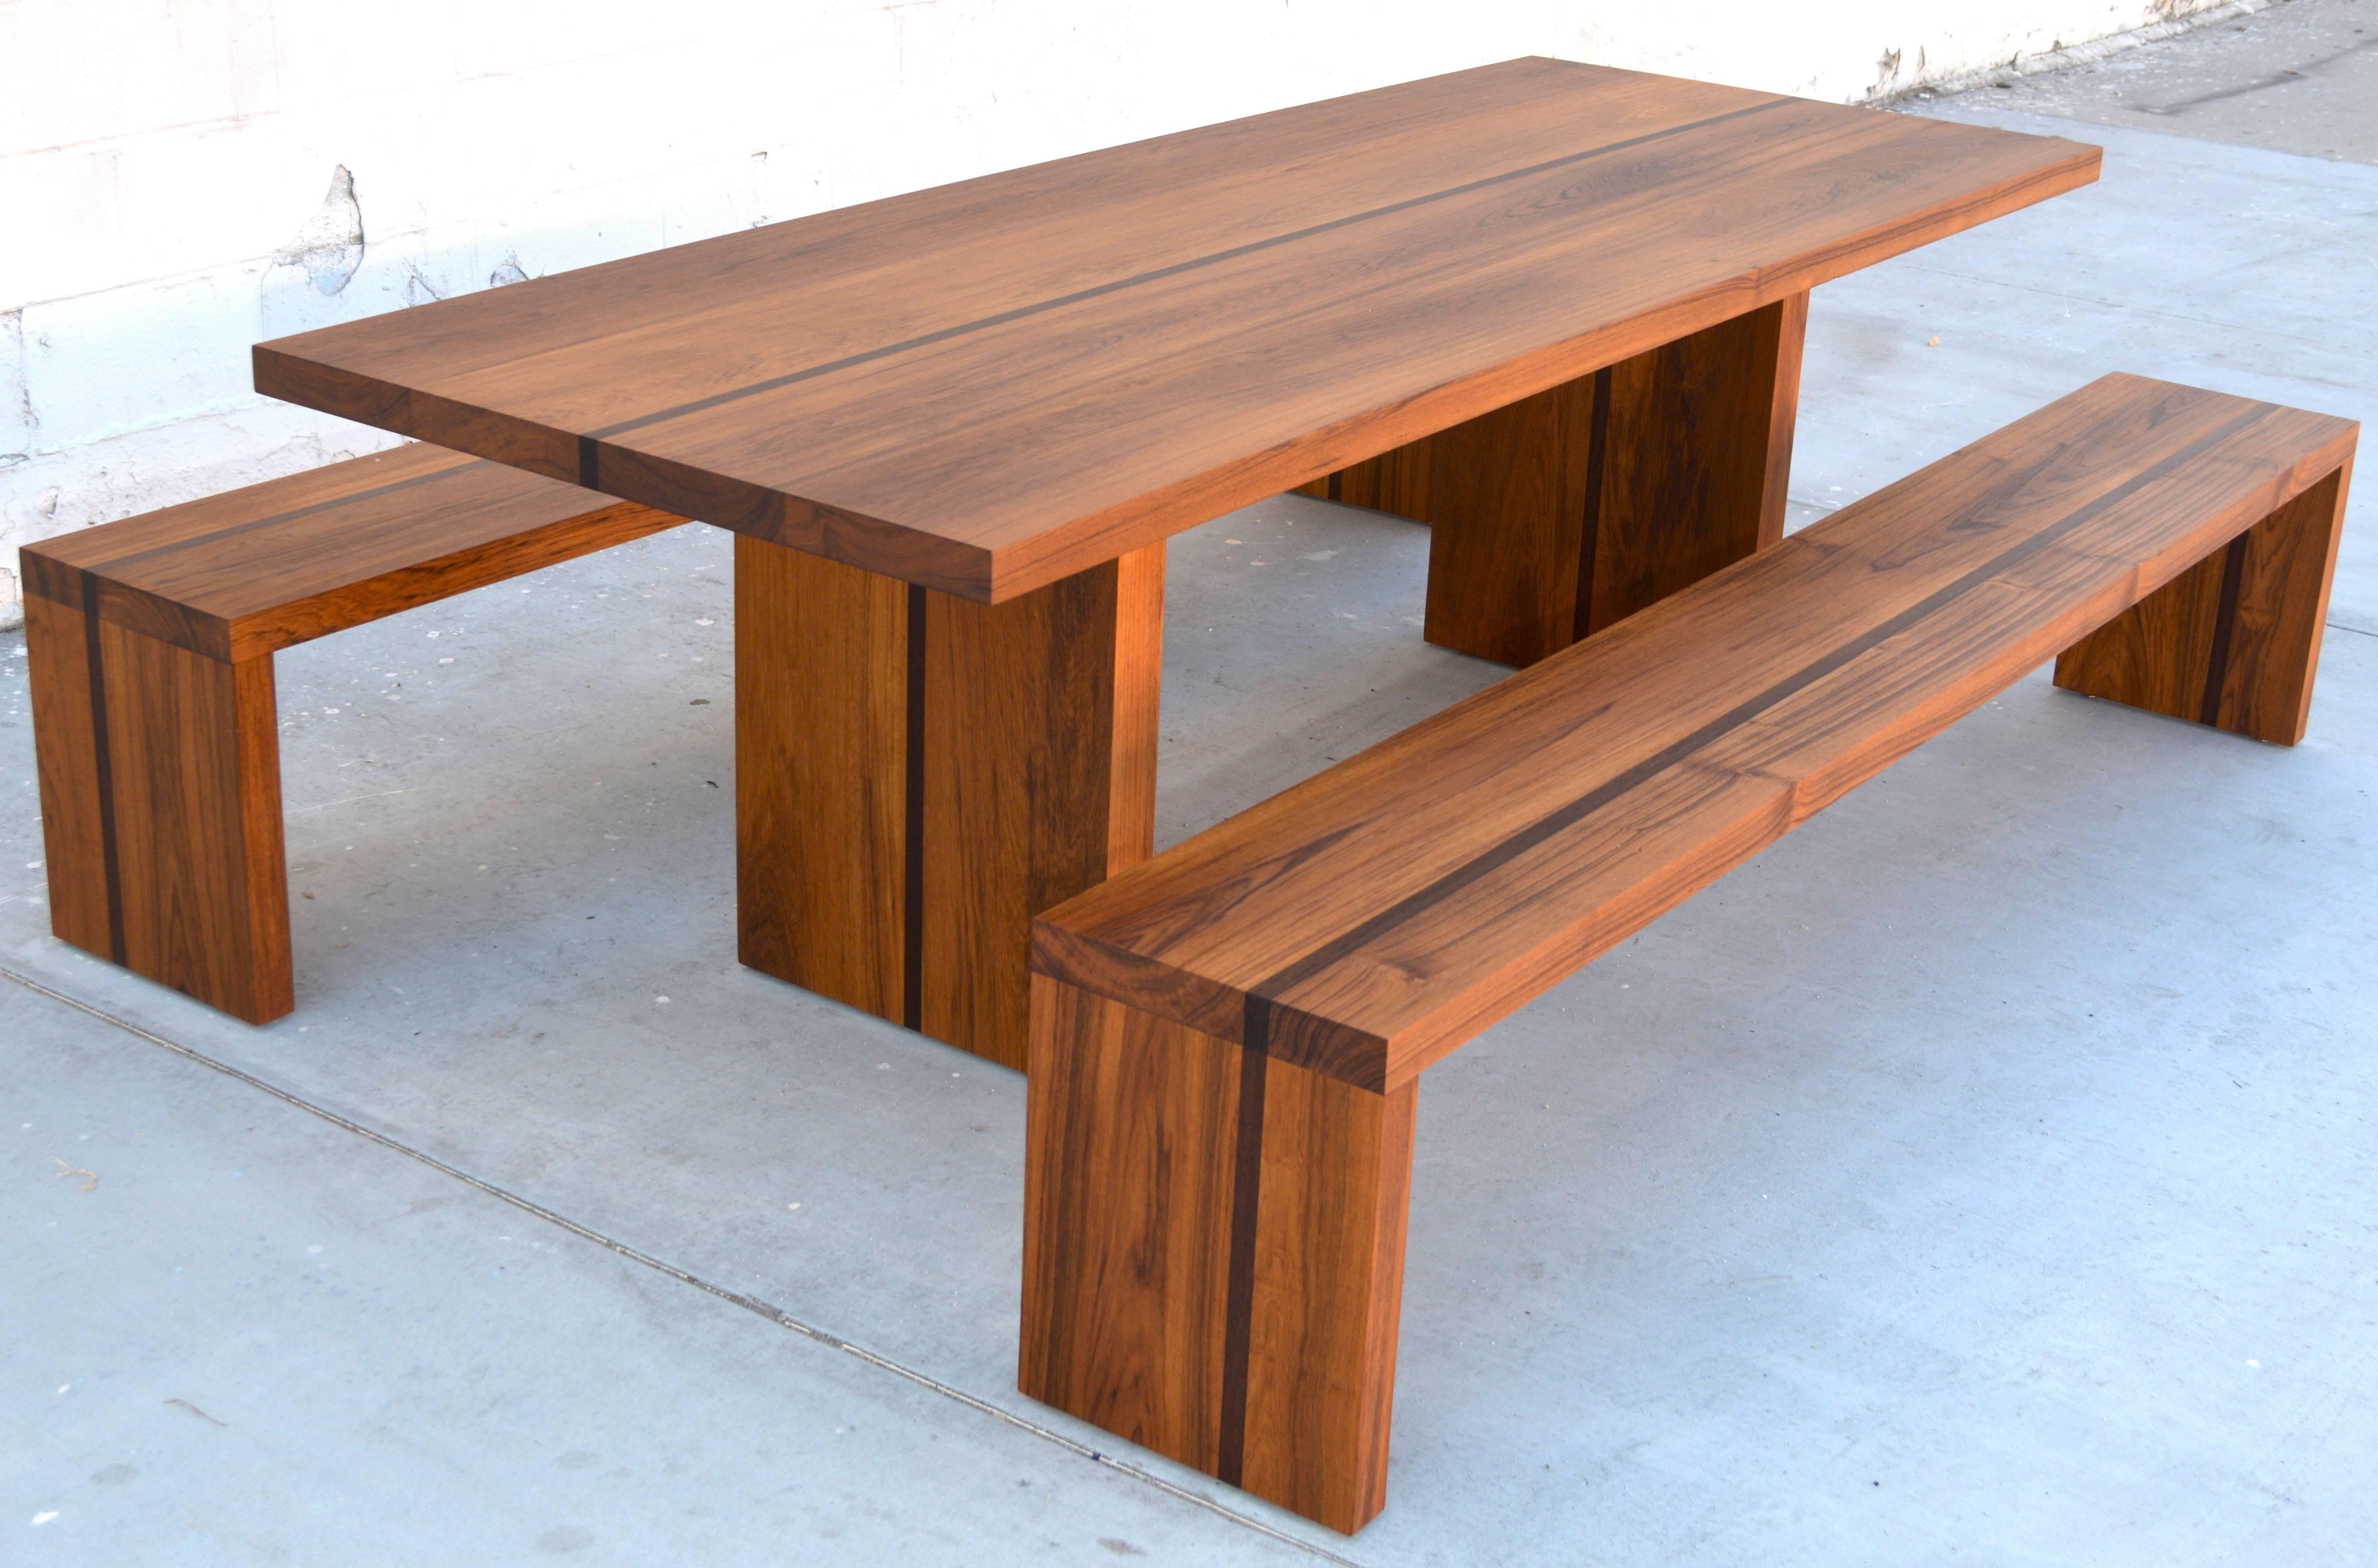 Cette table et ces bancs robustes, fabriqués en teck et en wengé, sont conçus pour résister à tous les climats. Les pieds sont renforcés par des plaques d'acier d'une épaisseur de 1/2 et sont dotés de pieds réglables. Bien que cet ensemble